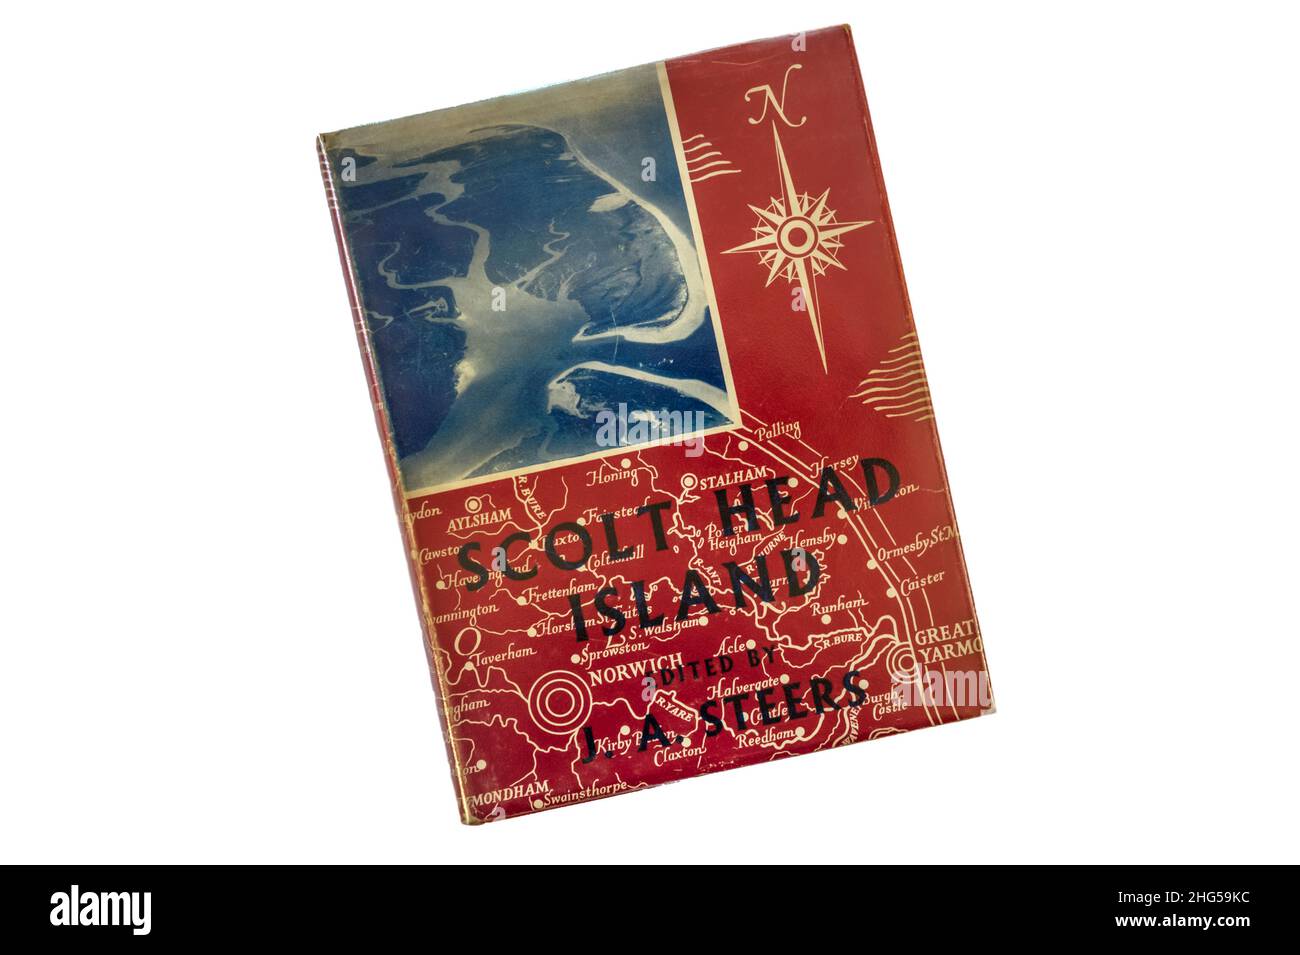 Scolt Head Island par J. A. Steers.Publiée pour la première fois en 1934, la photographie montre l'édition révisée de 1960. Banque D'Images